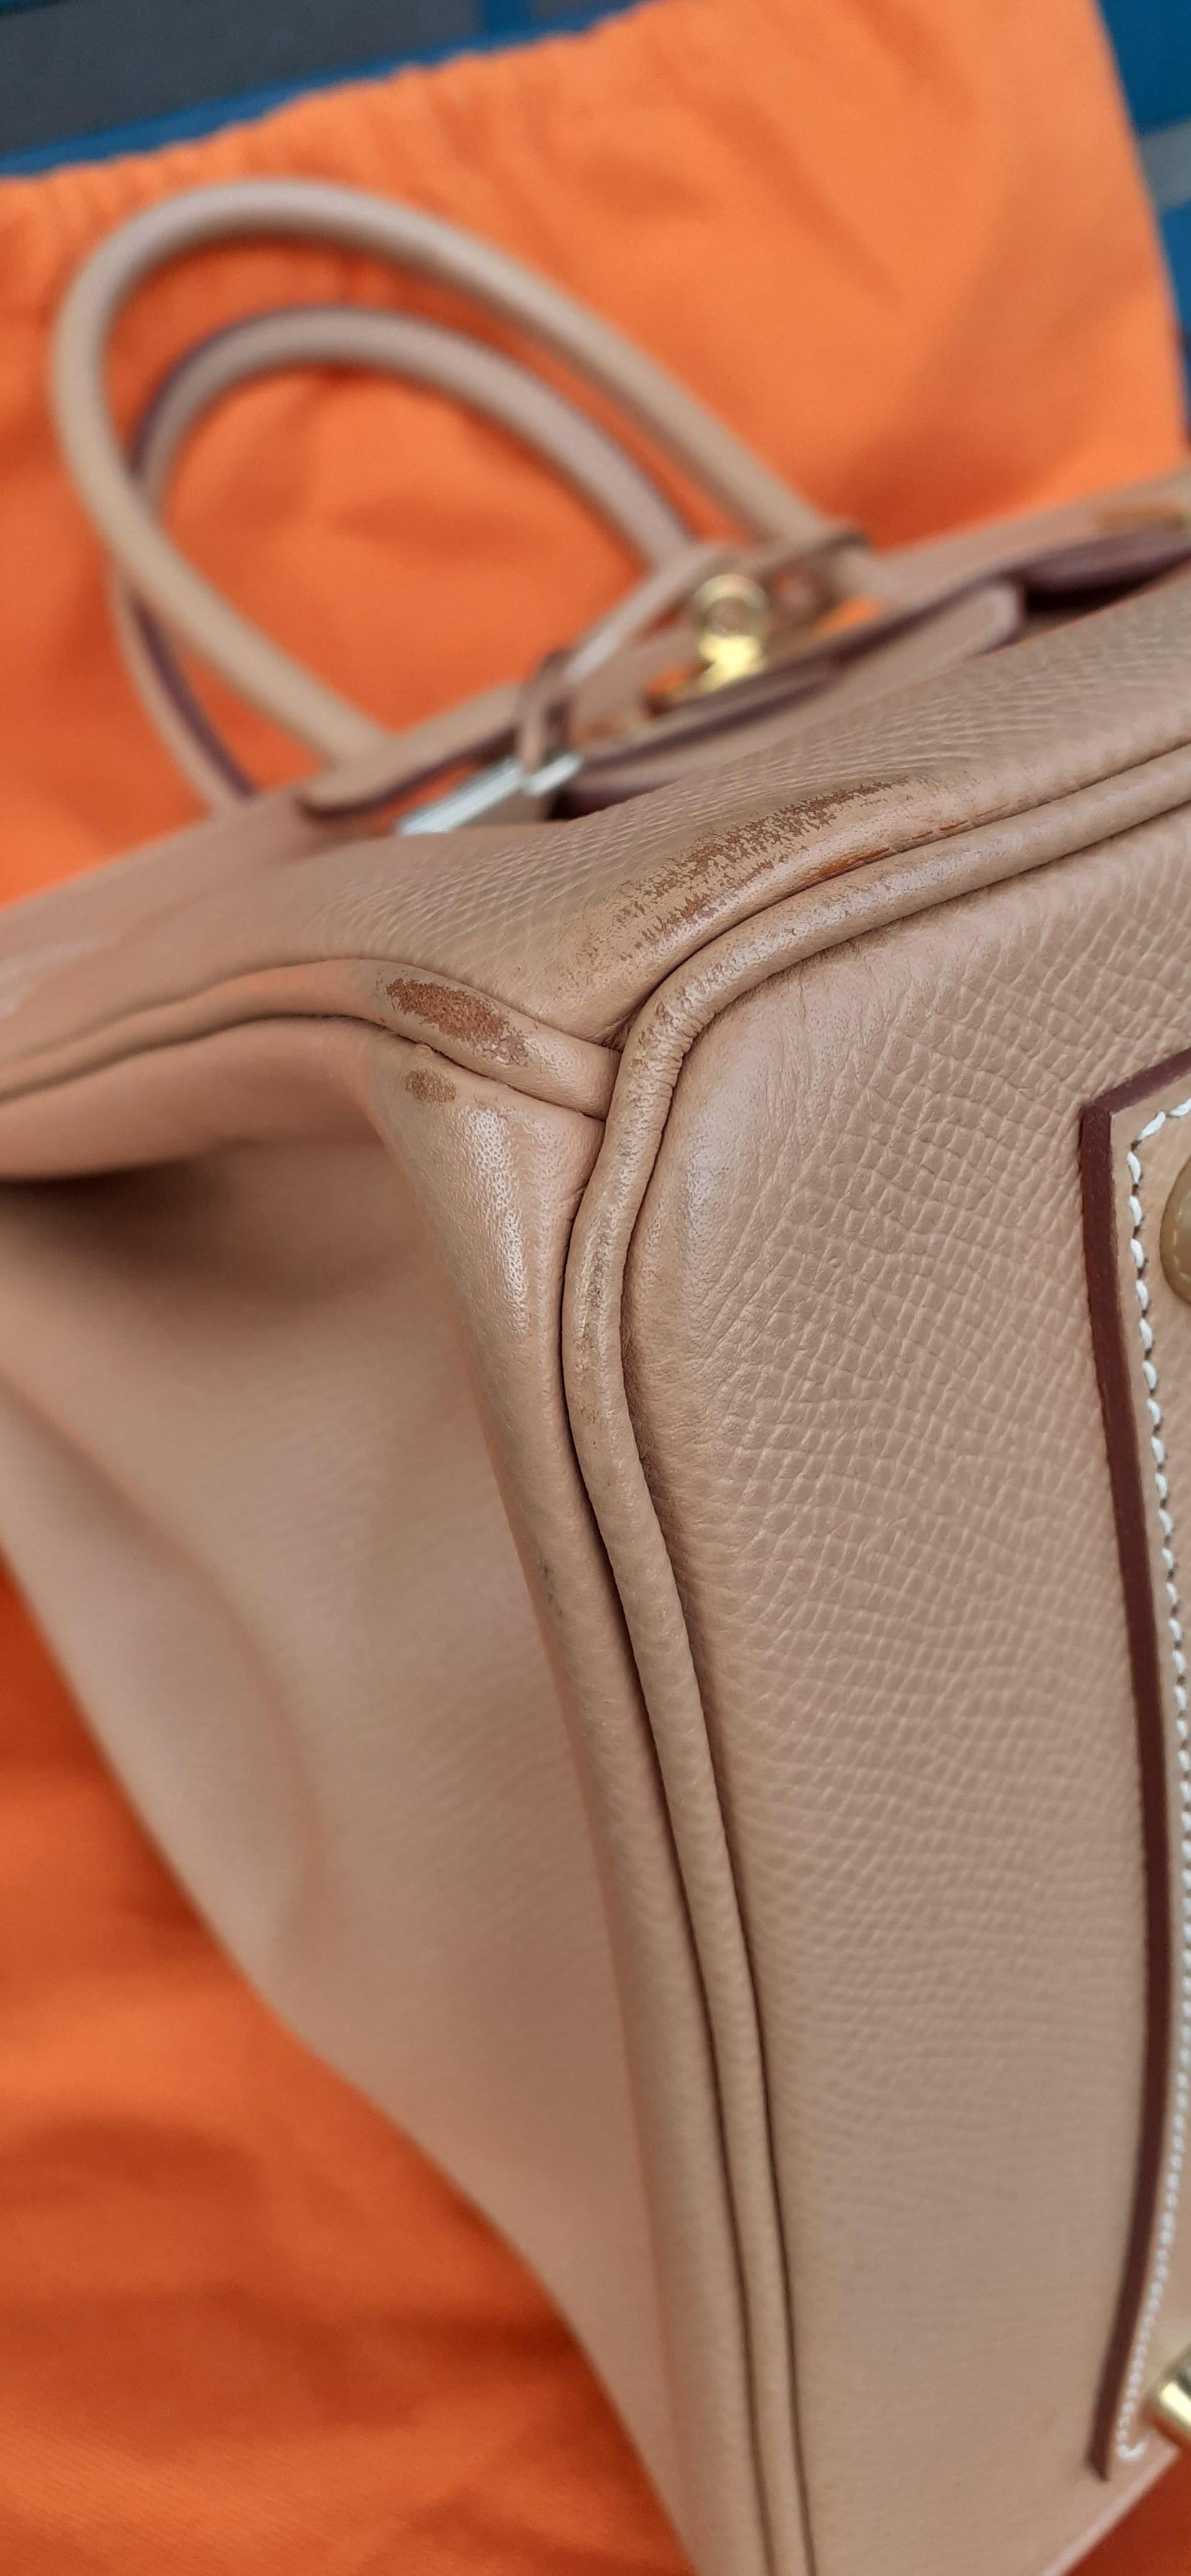 Hermès Birkin Top Handle Bag Naturel Epsom Leather Gold Hdw 35 cm 13